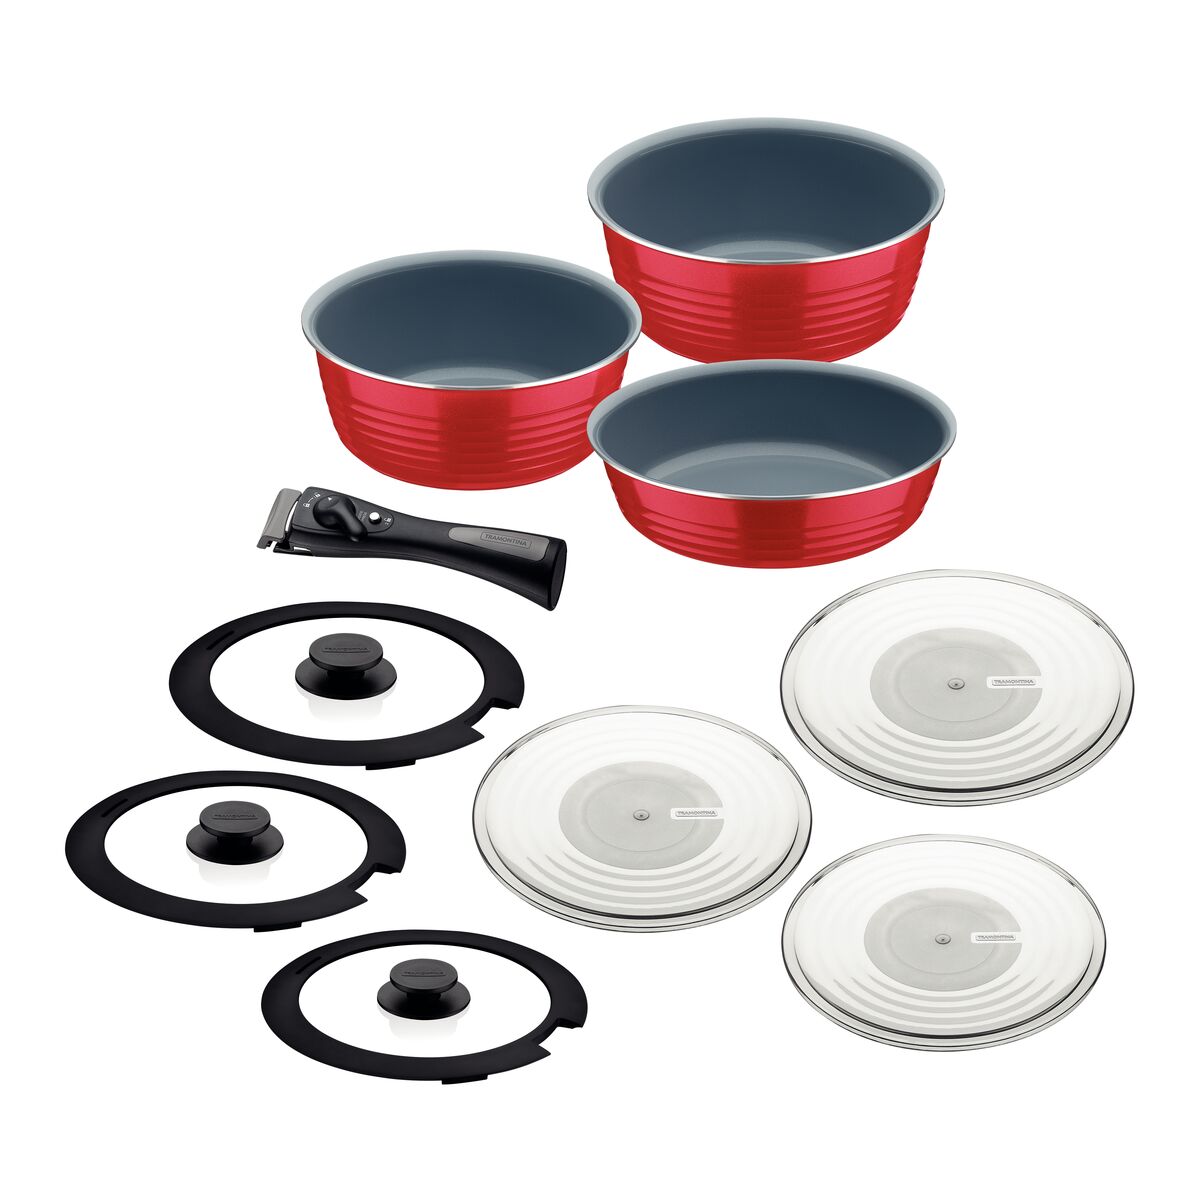 Tramontina Ítria Red Multipurpose Aluminum Cookware Set with Interior and Exterior Ceramic Coating, 10 pieces